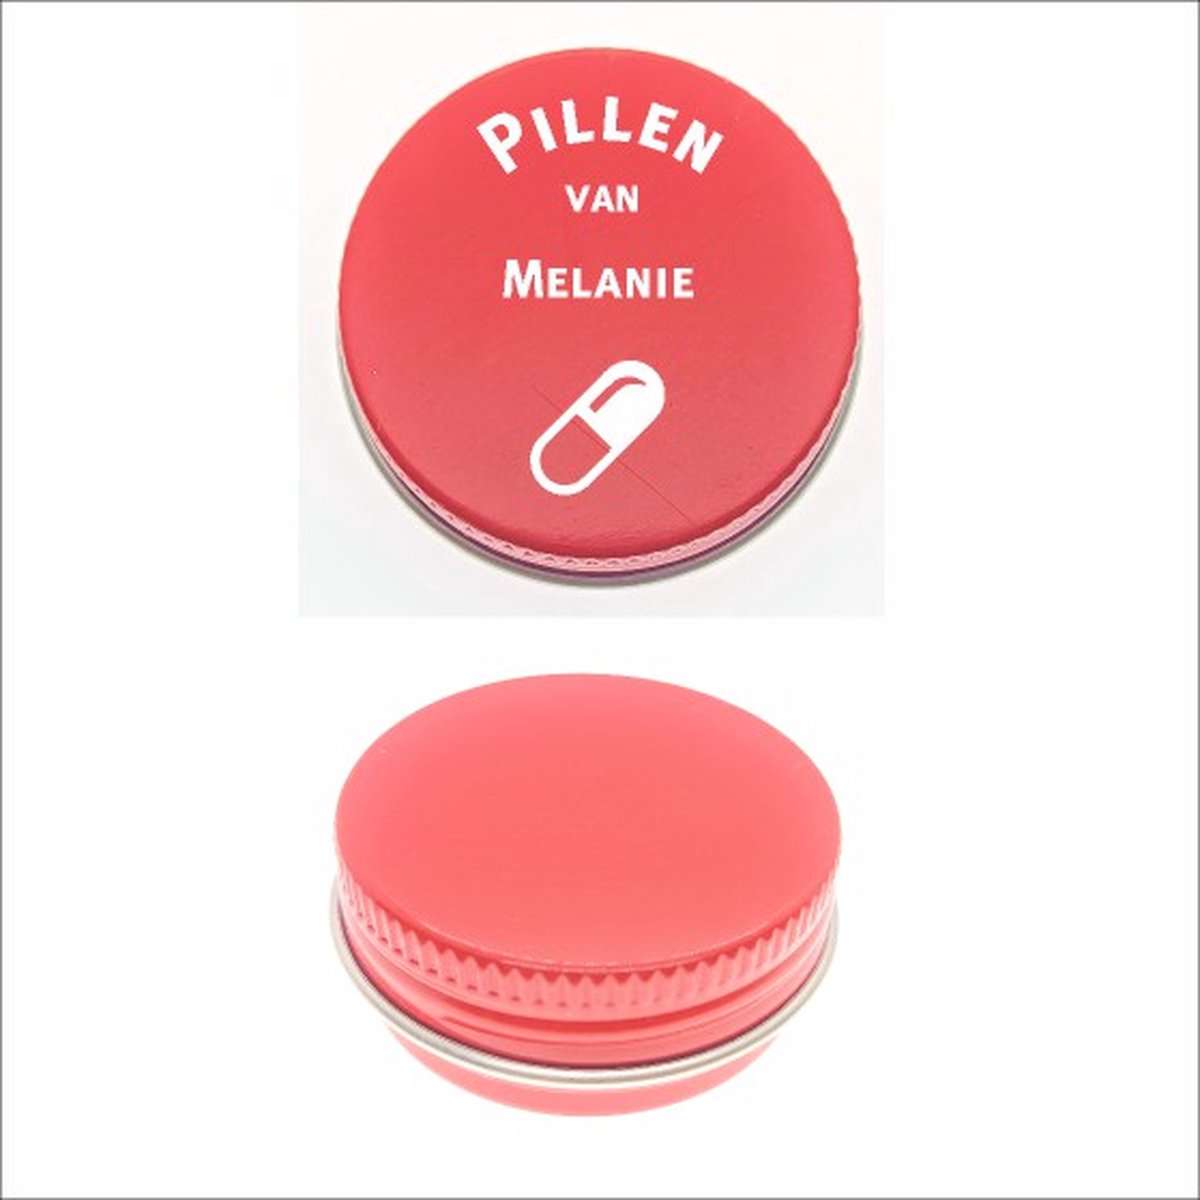 Pillen Blikje Met Naam Gravering - Melanie